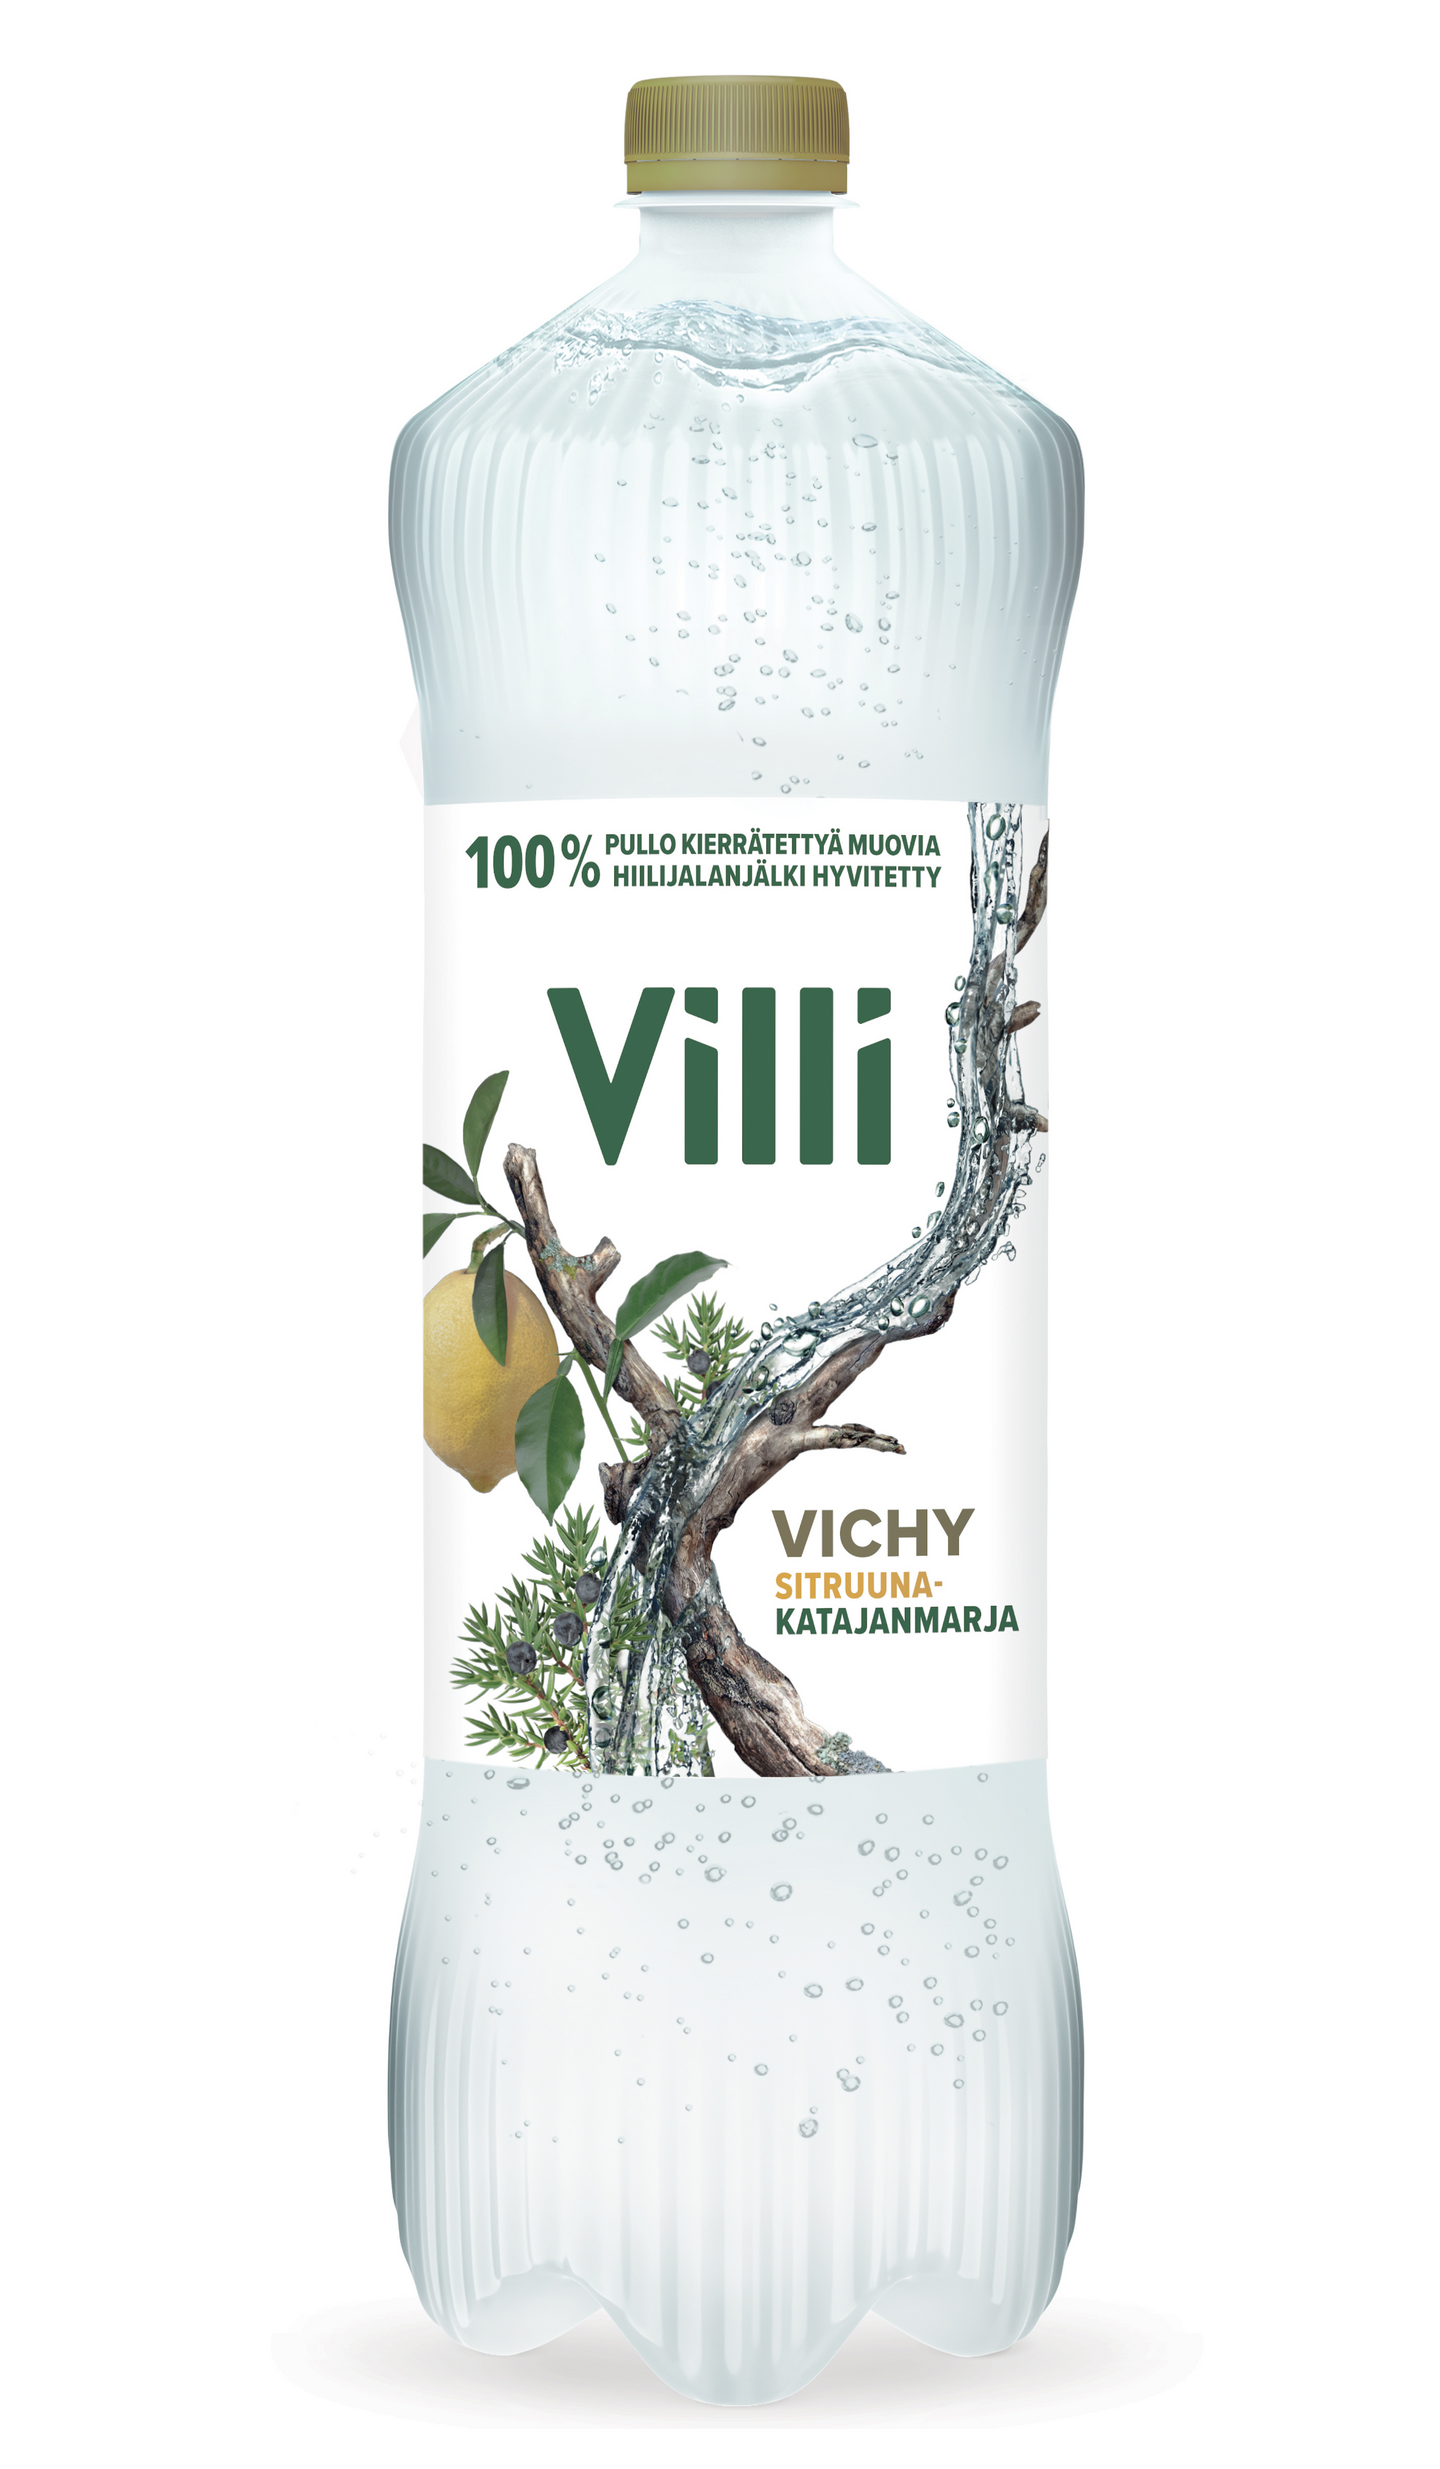 Villi Vichy sitruuna-katajanmarja 1,5l DOLLY